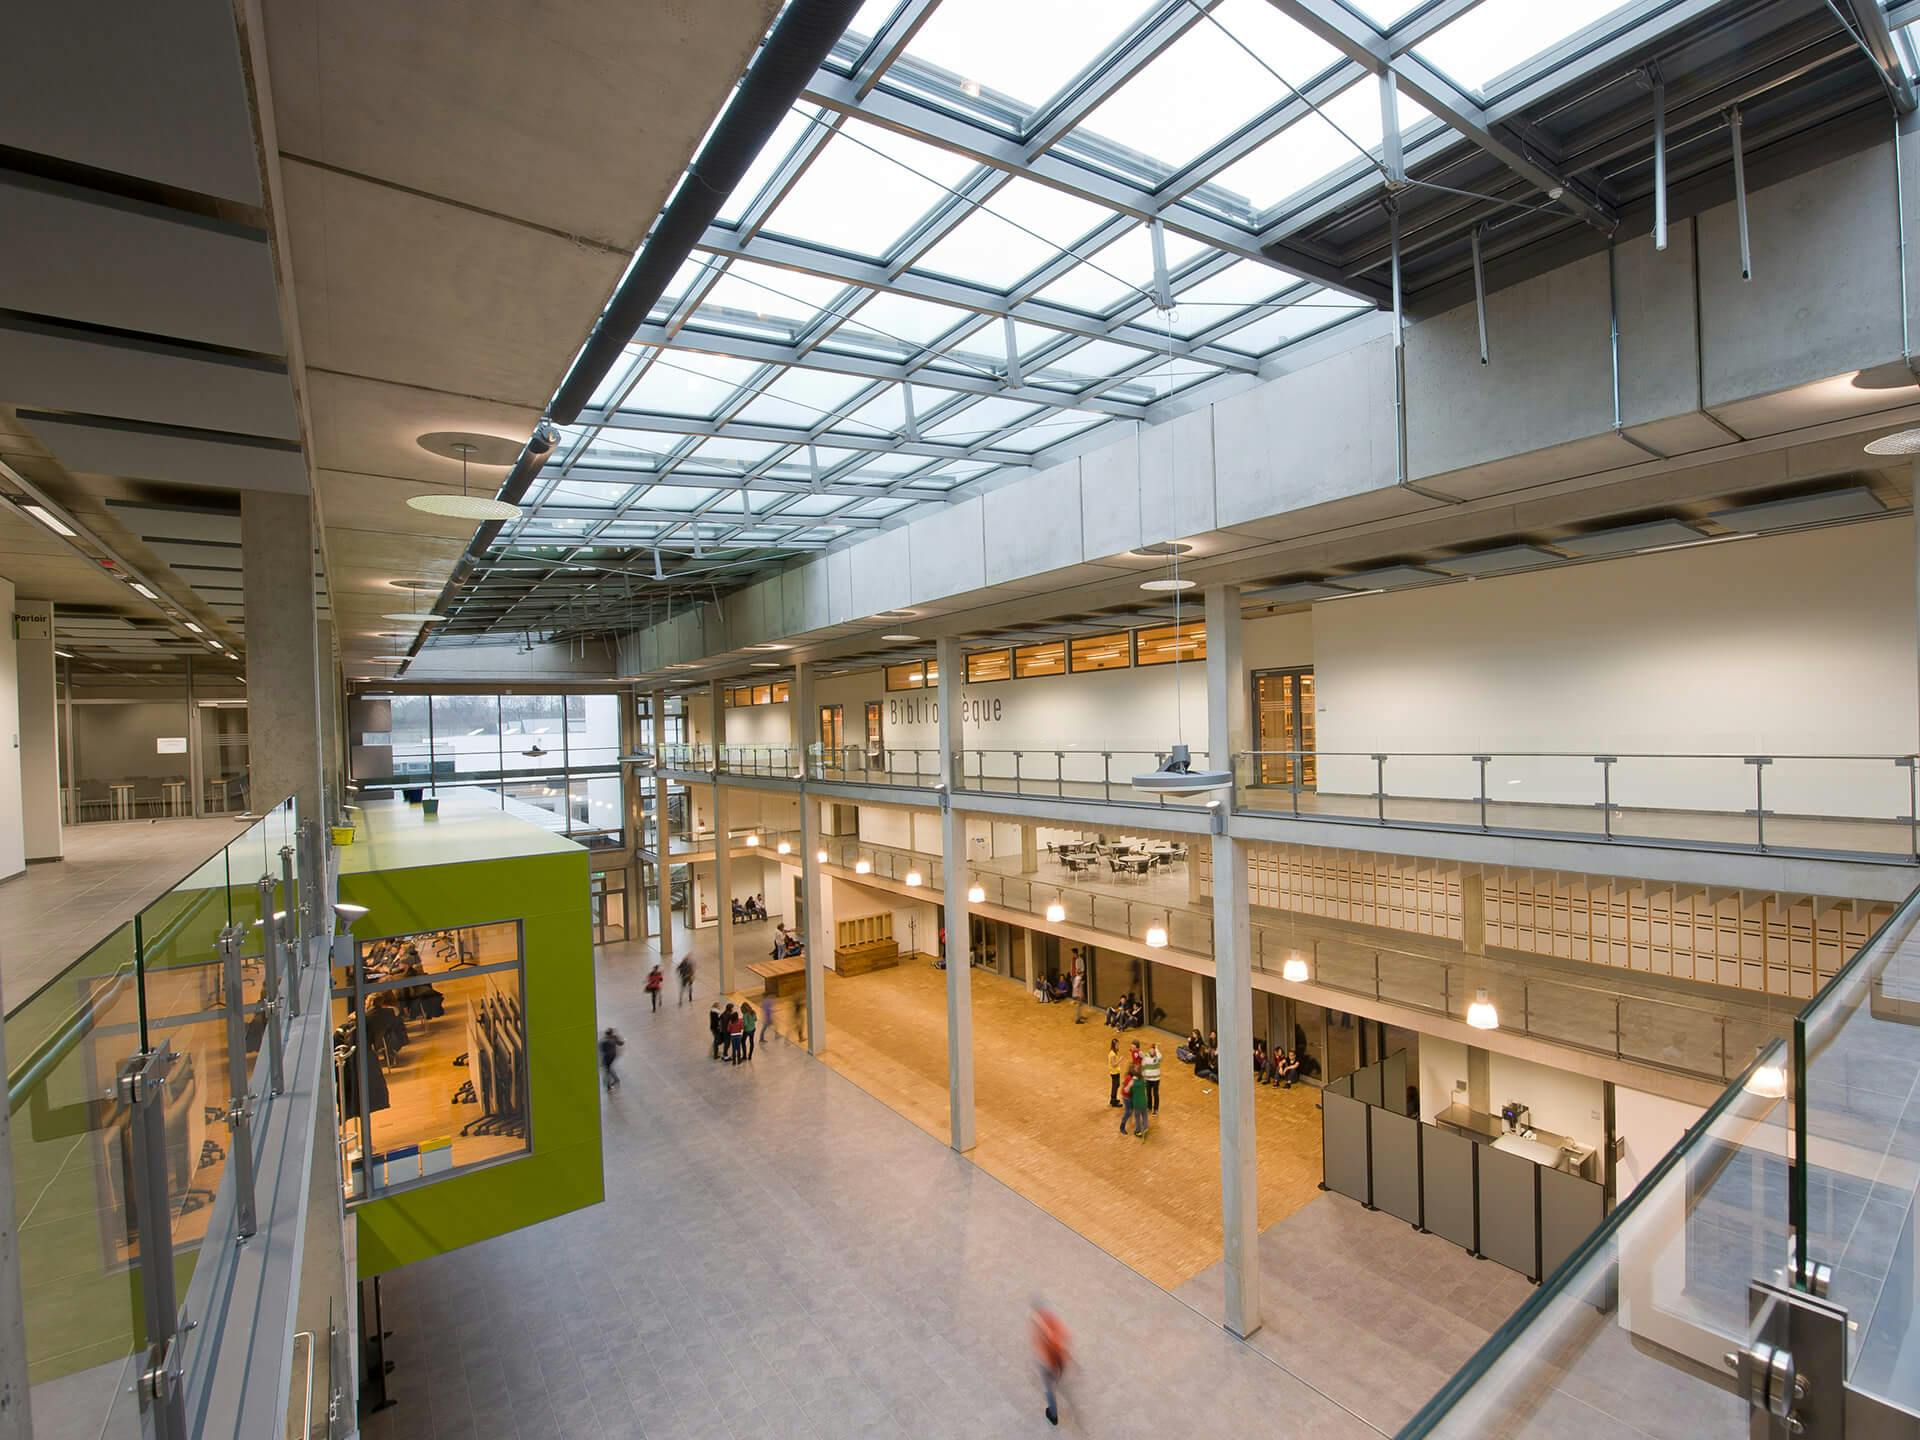 Le campus scolaire à Mersch, une construction durable en PPP – Public Private Partnership